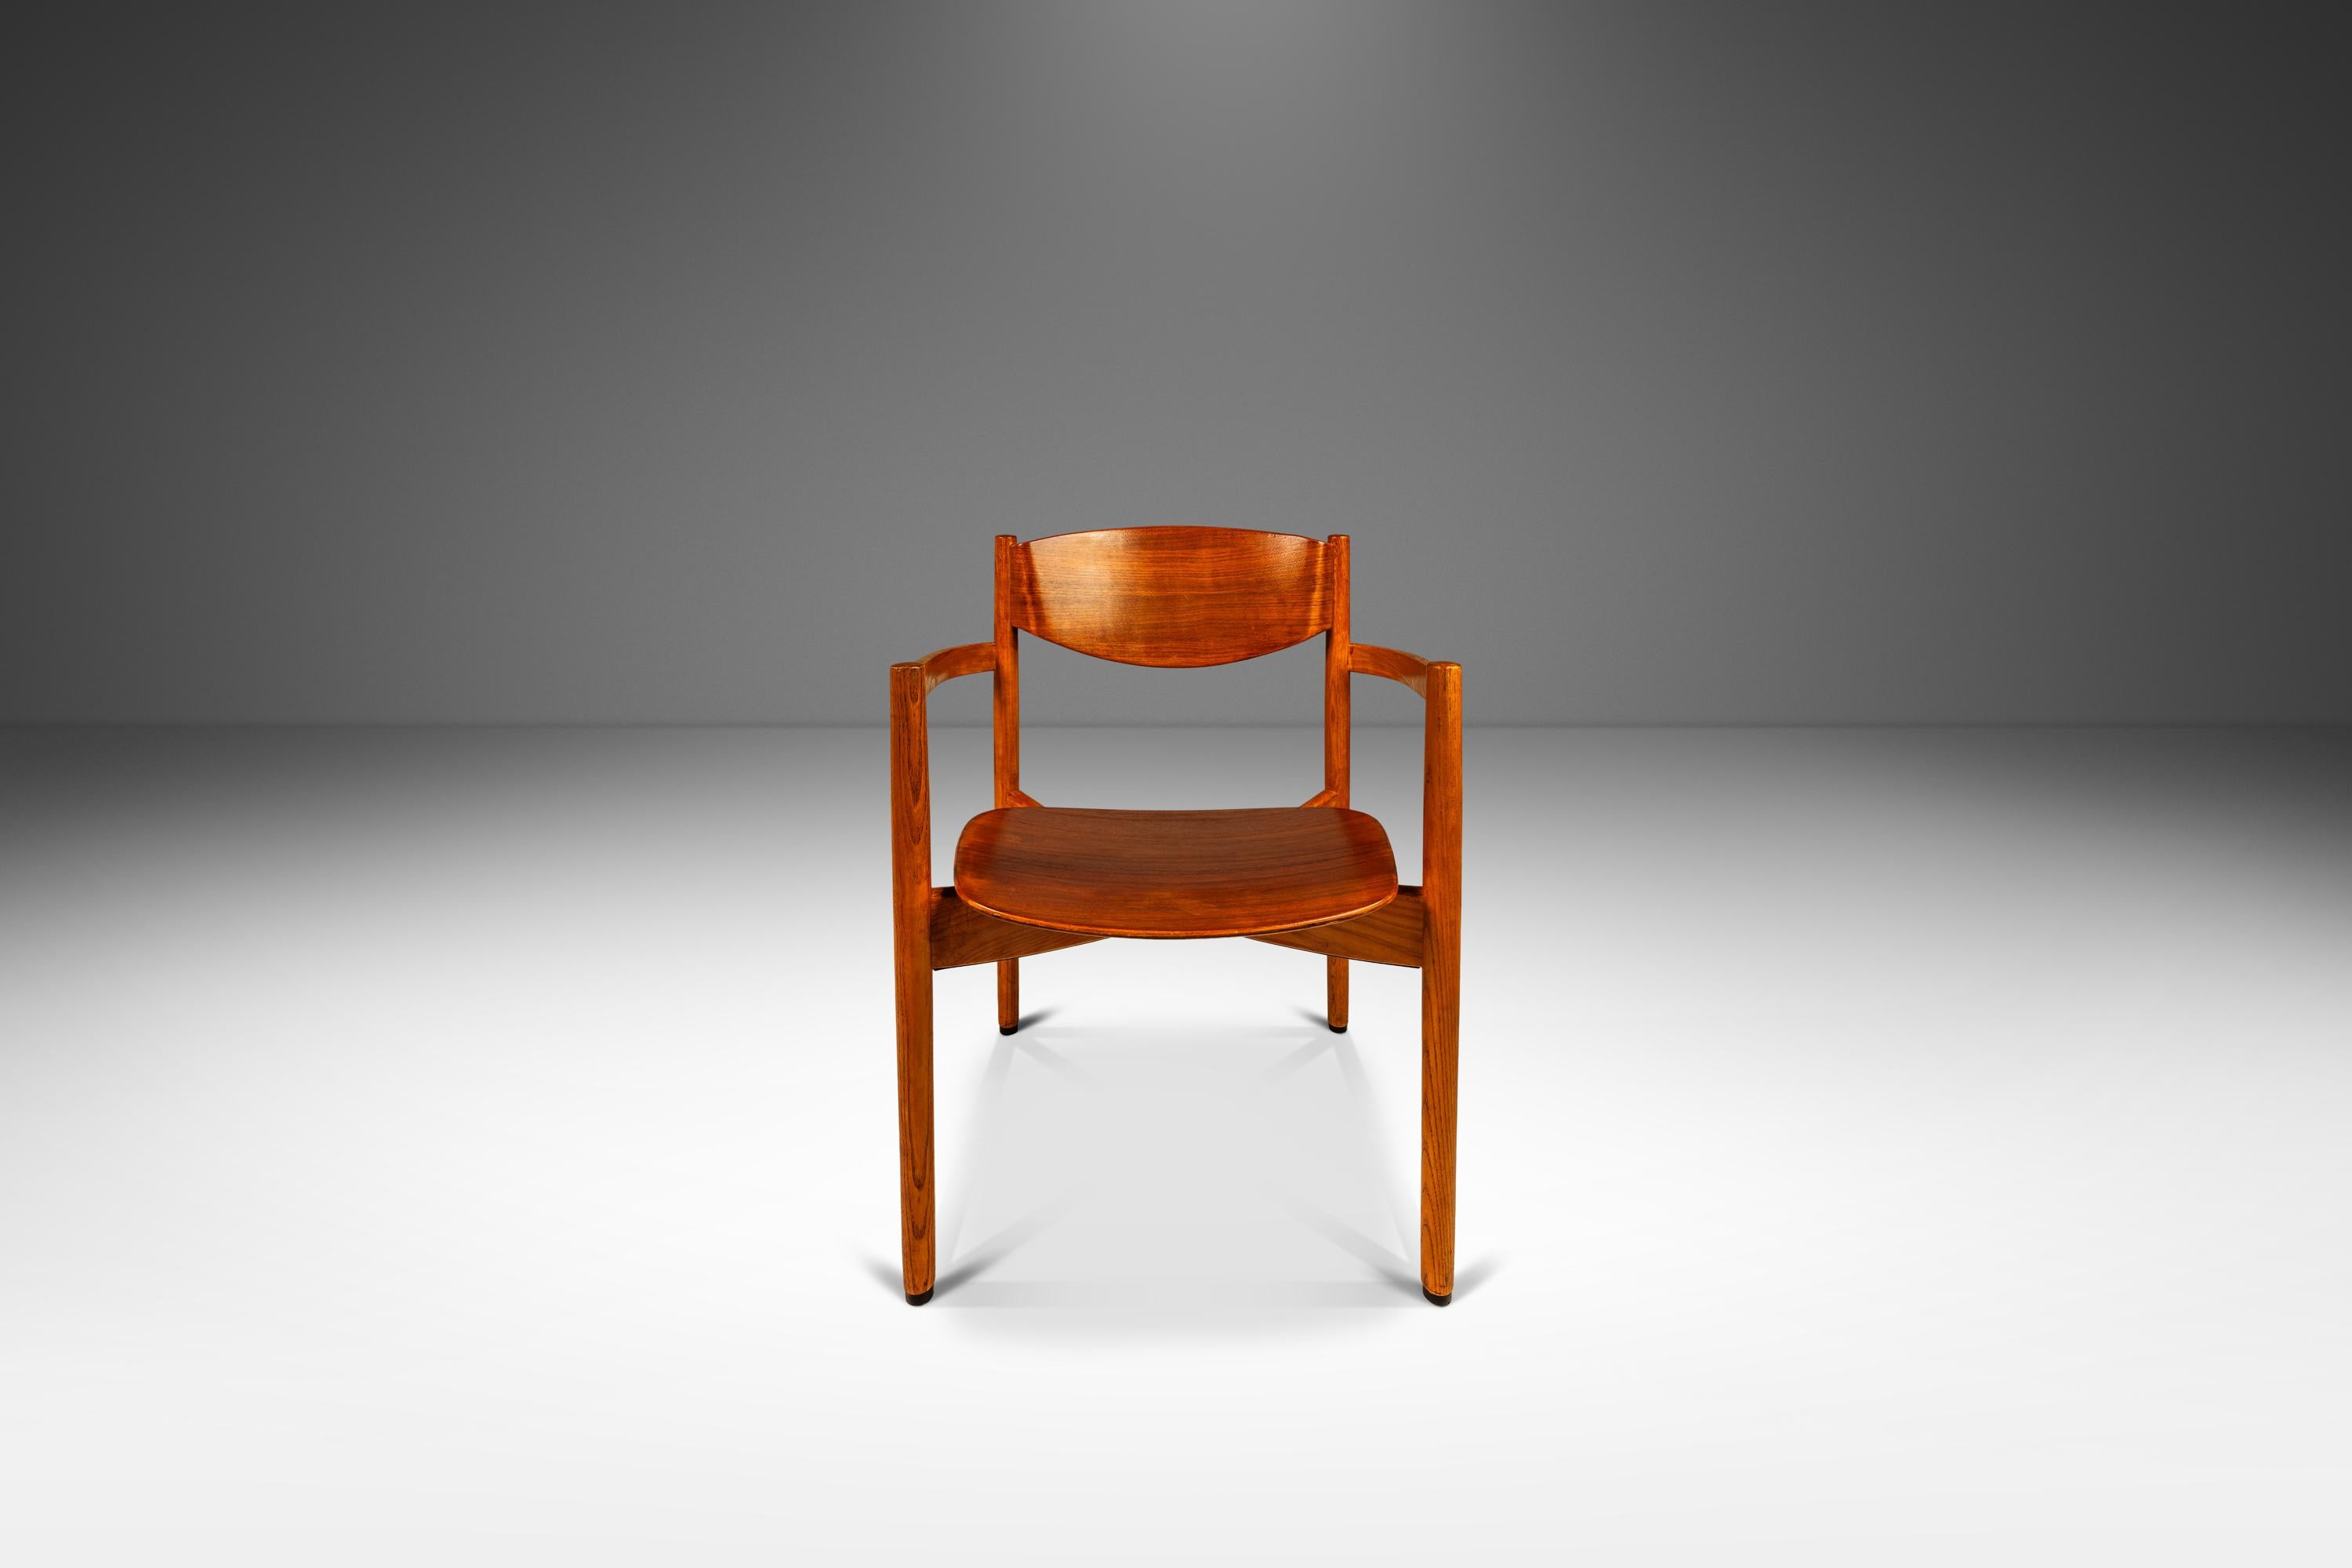 Einzelner Mid-Century Modern Chair in Eiche und Nussbaum  Von Jens Risom, USA, ca. 1960er Jahre (amerikanisch) im Angebot